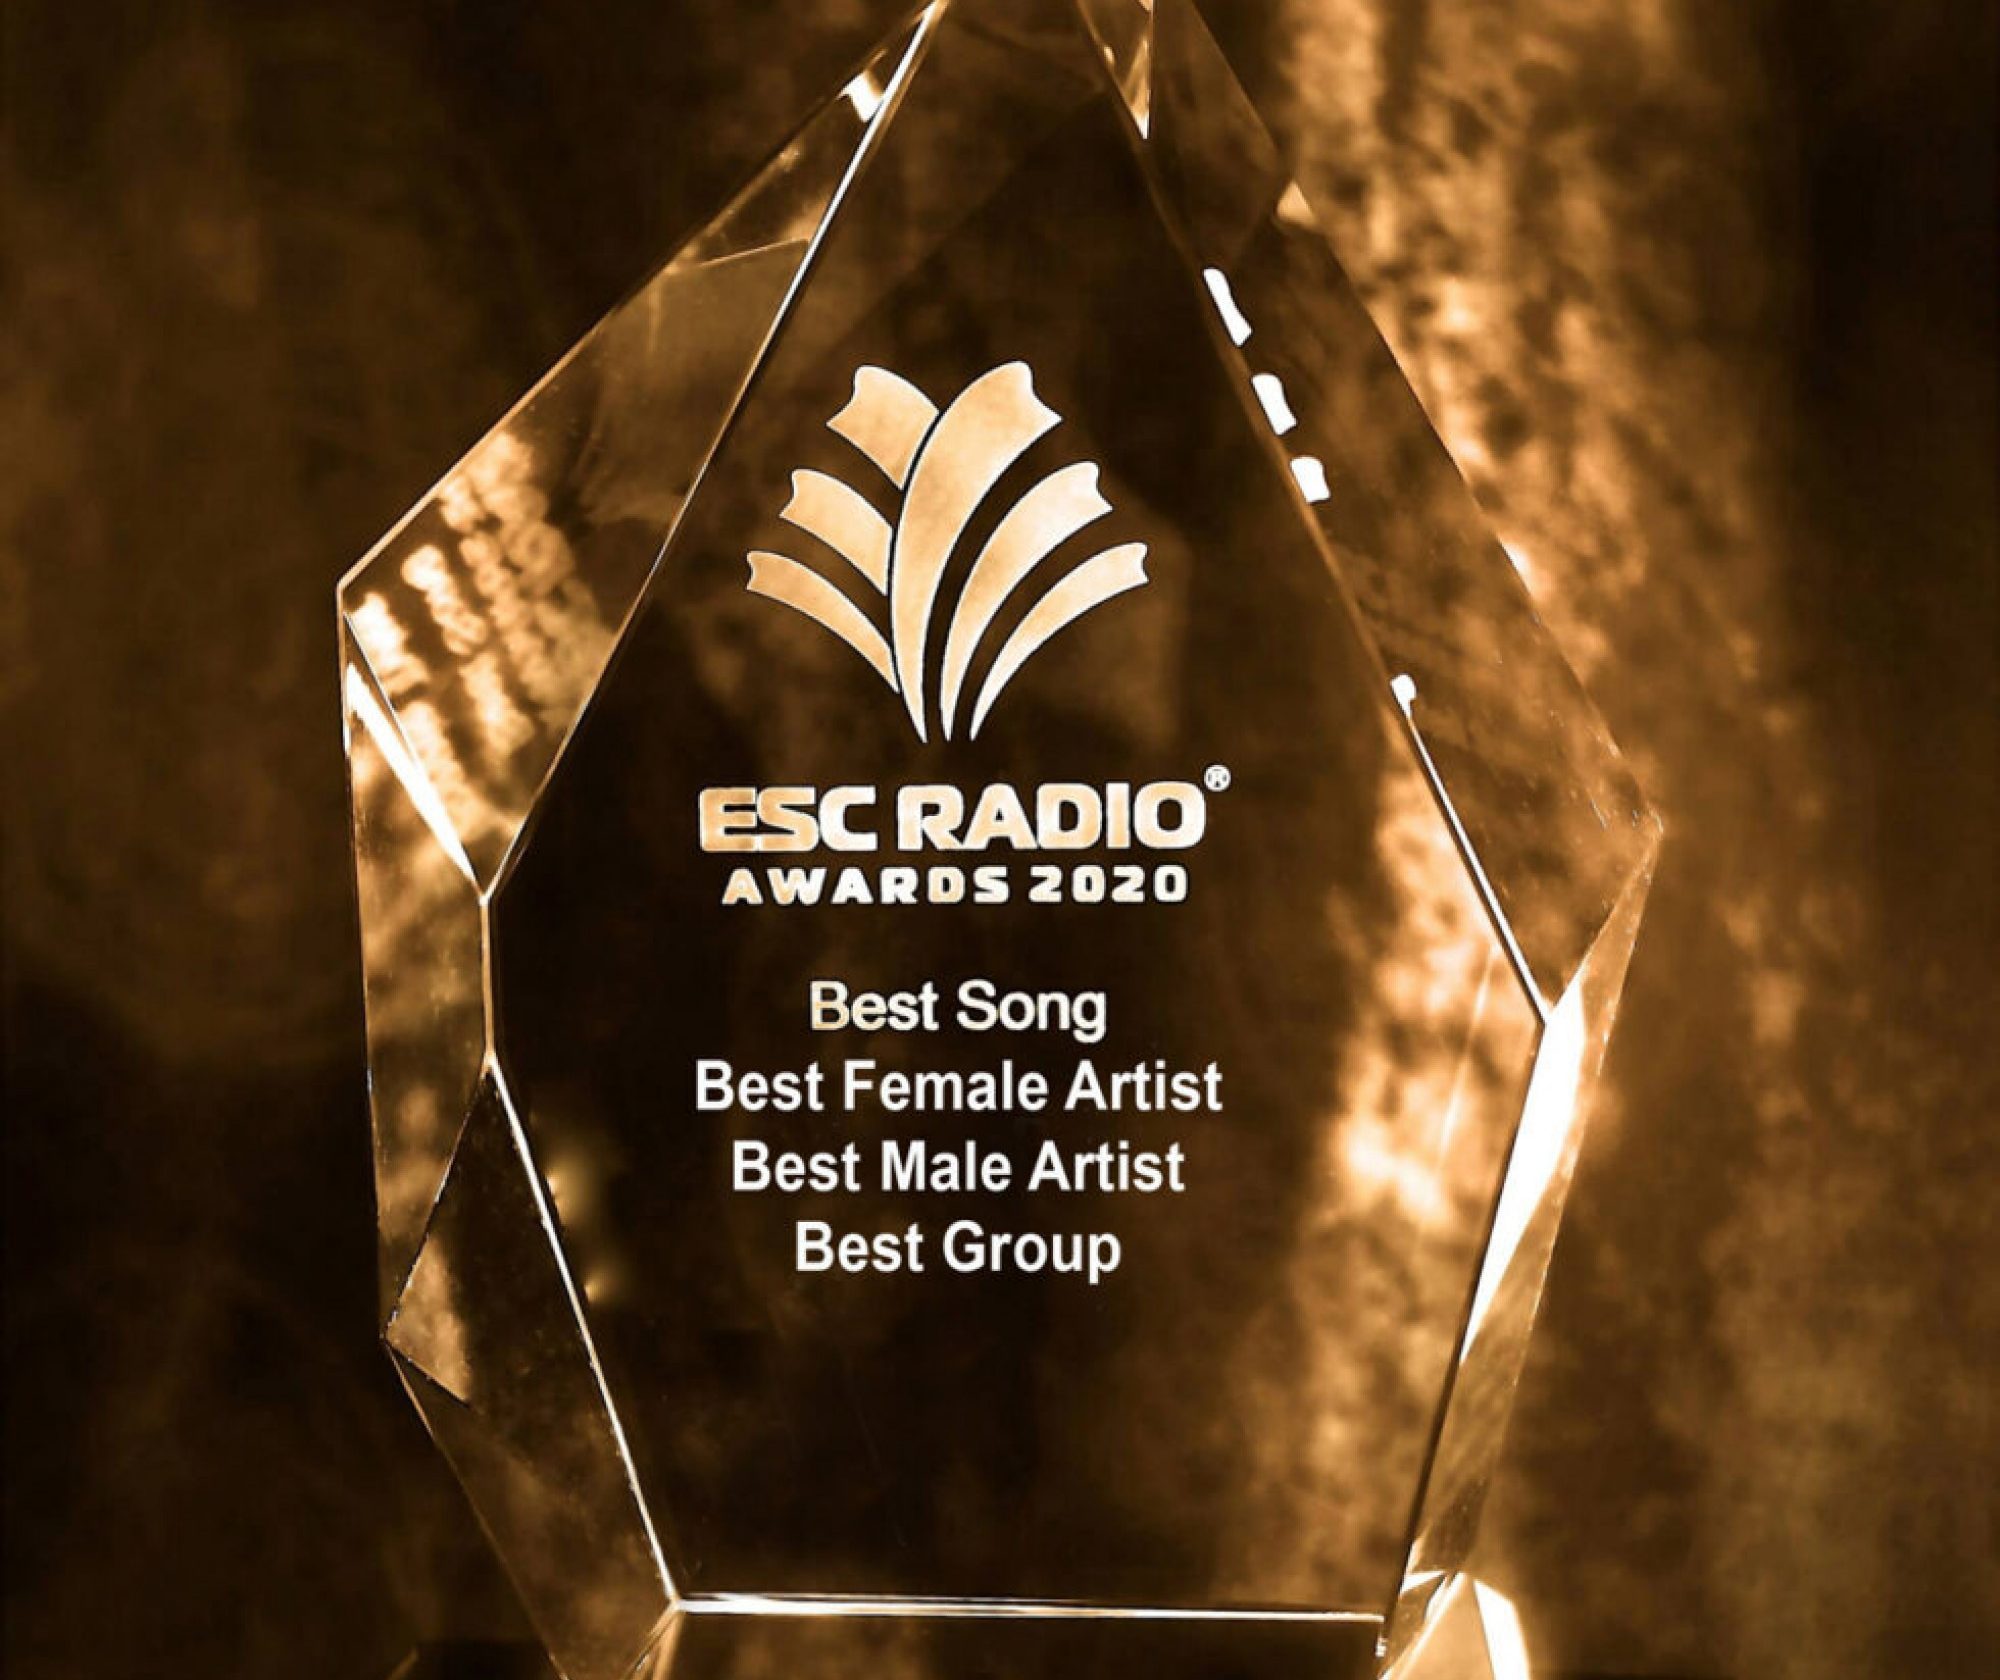 13052020_042810_Trophy_ESC_Radio_Awards_2020_grande